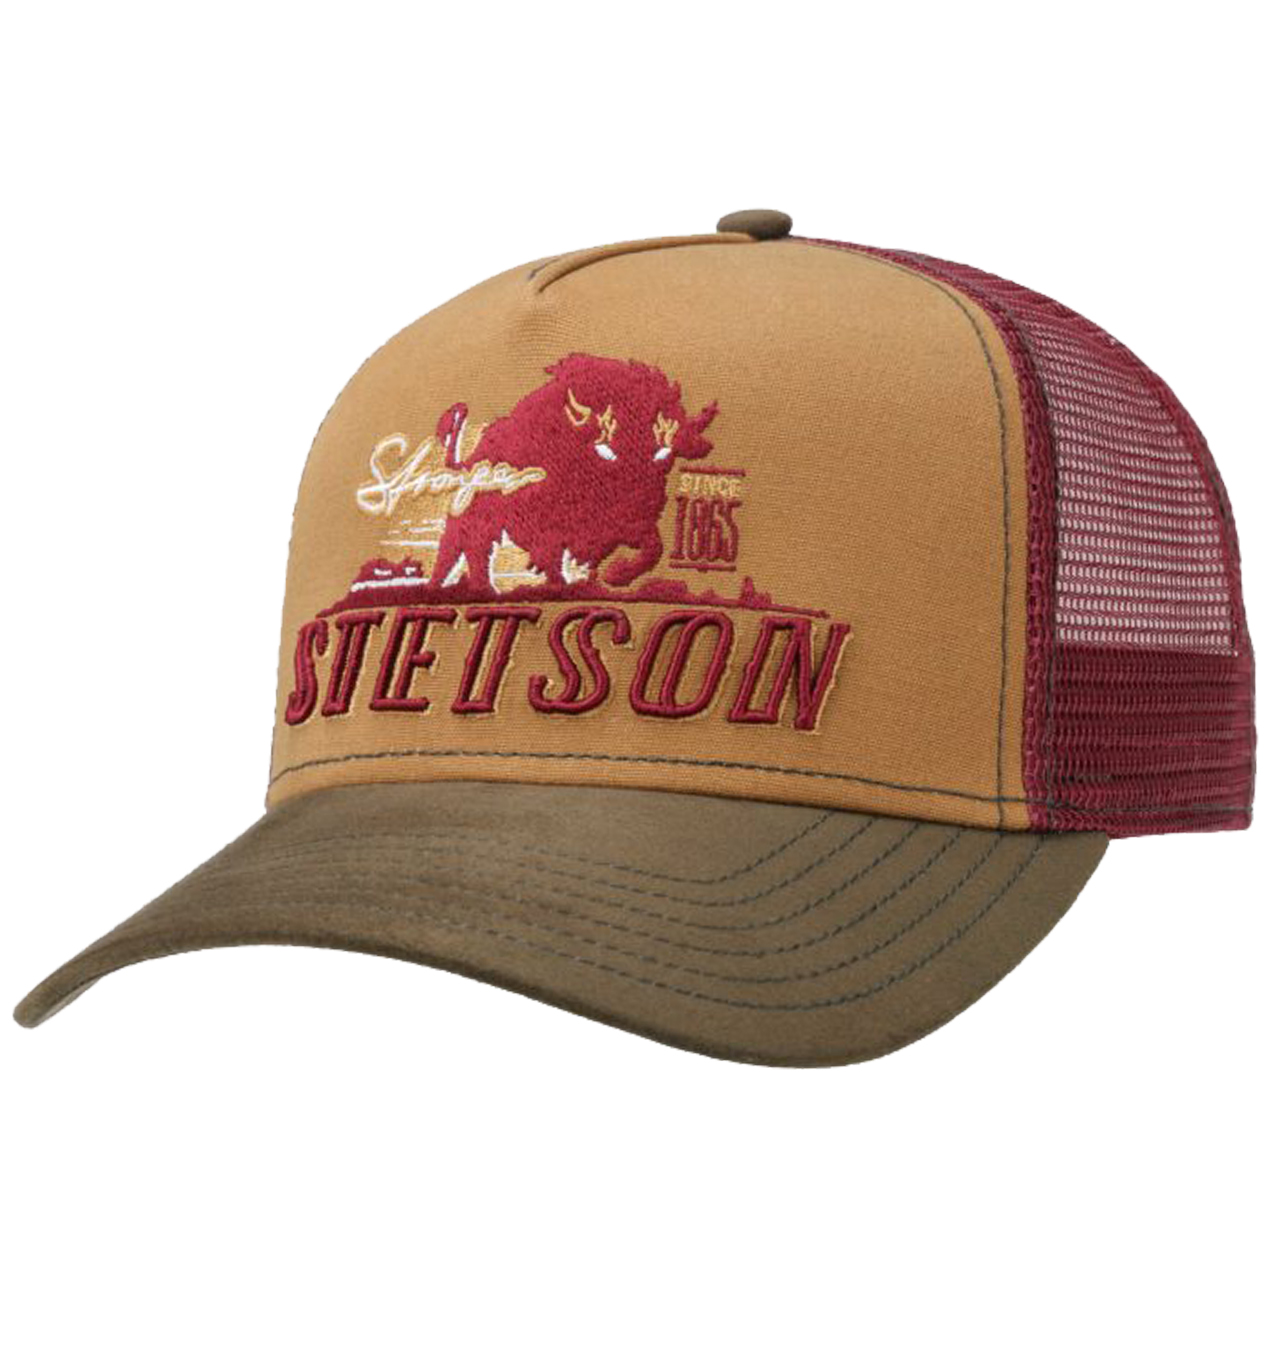 Stetson - Stronger Bison Trucker Cap - Brown/Crimson